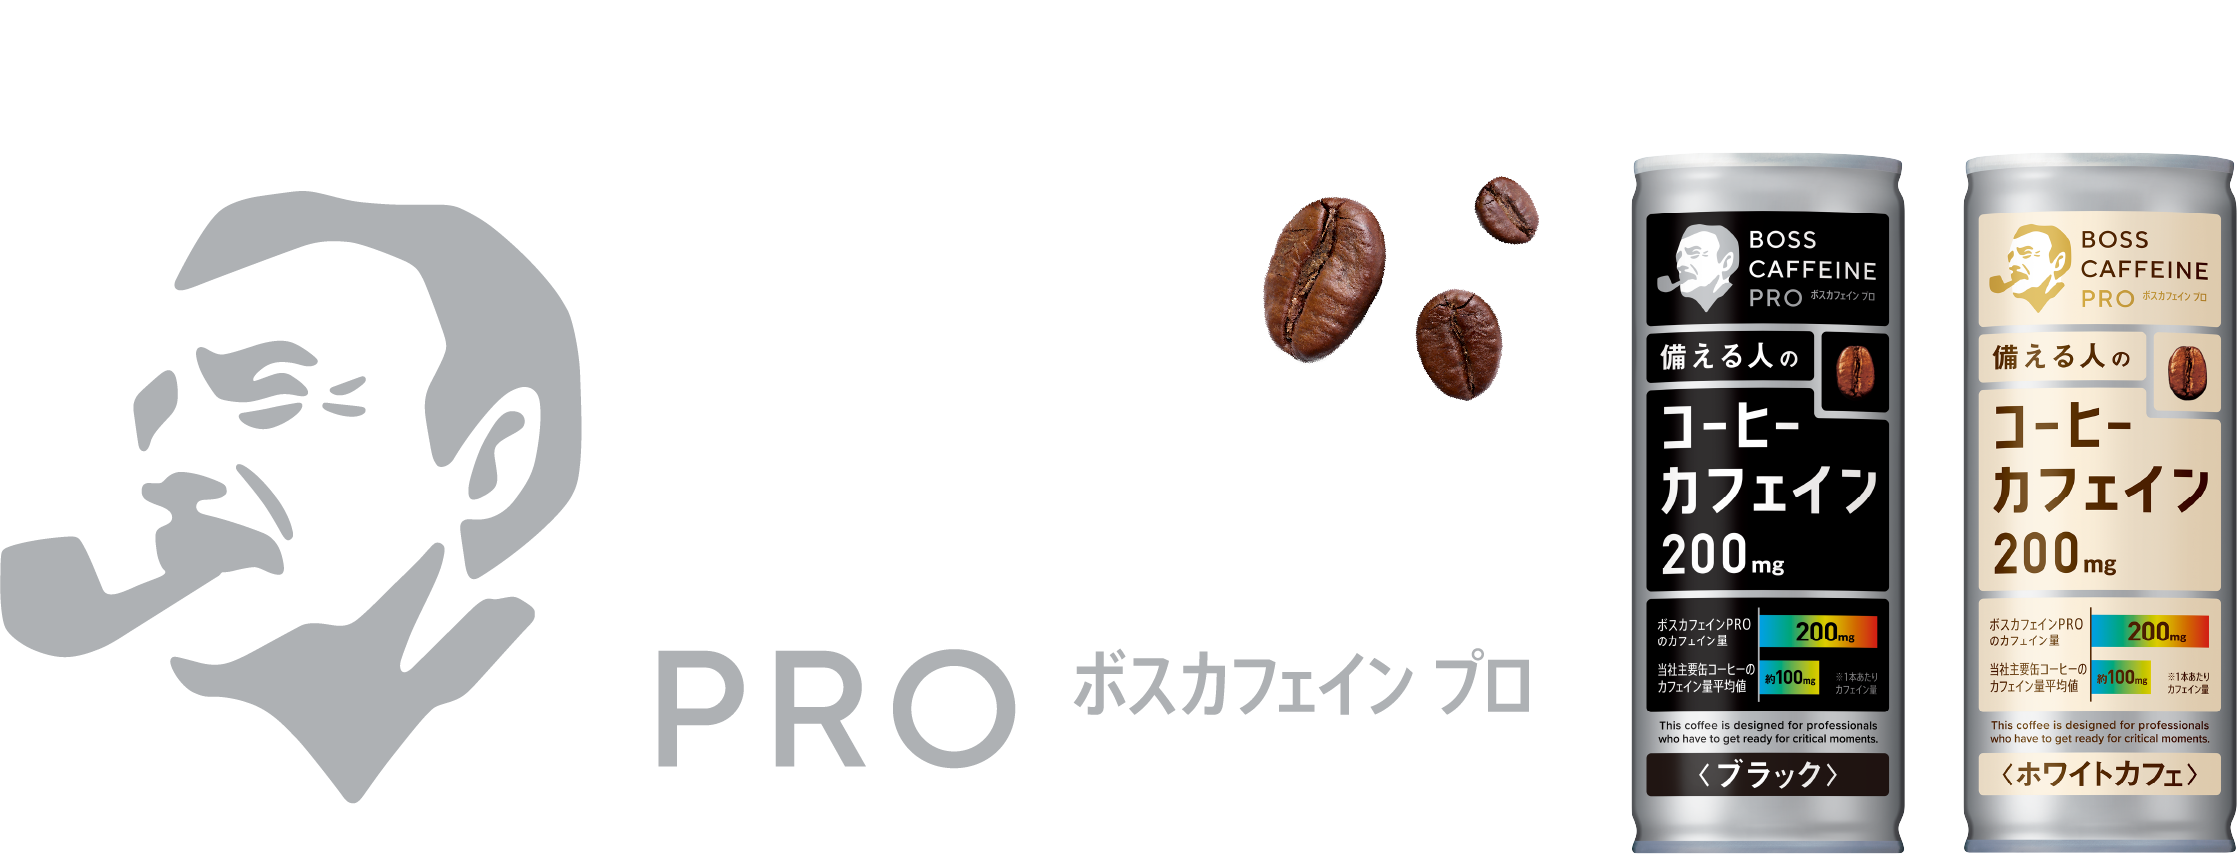 ここぞの時に備える人のためのプロ仕様缶コーヒーカフェイン。BOSS CAFFEINE PRO ボスカフェイン プロ